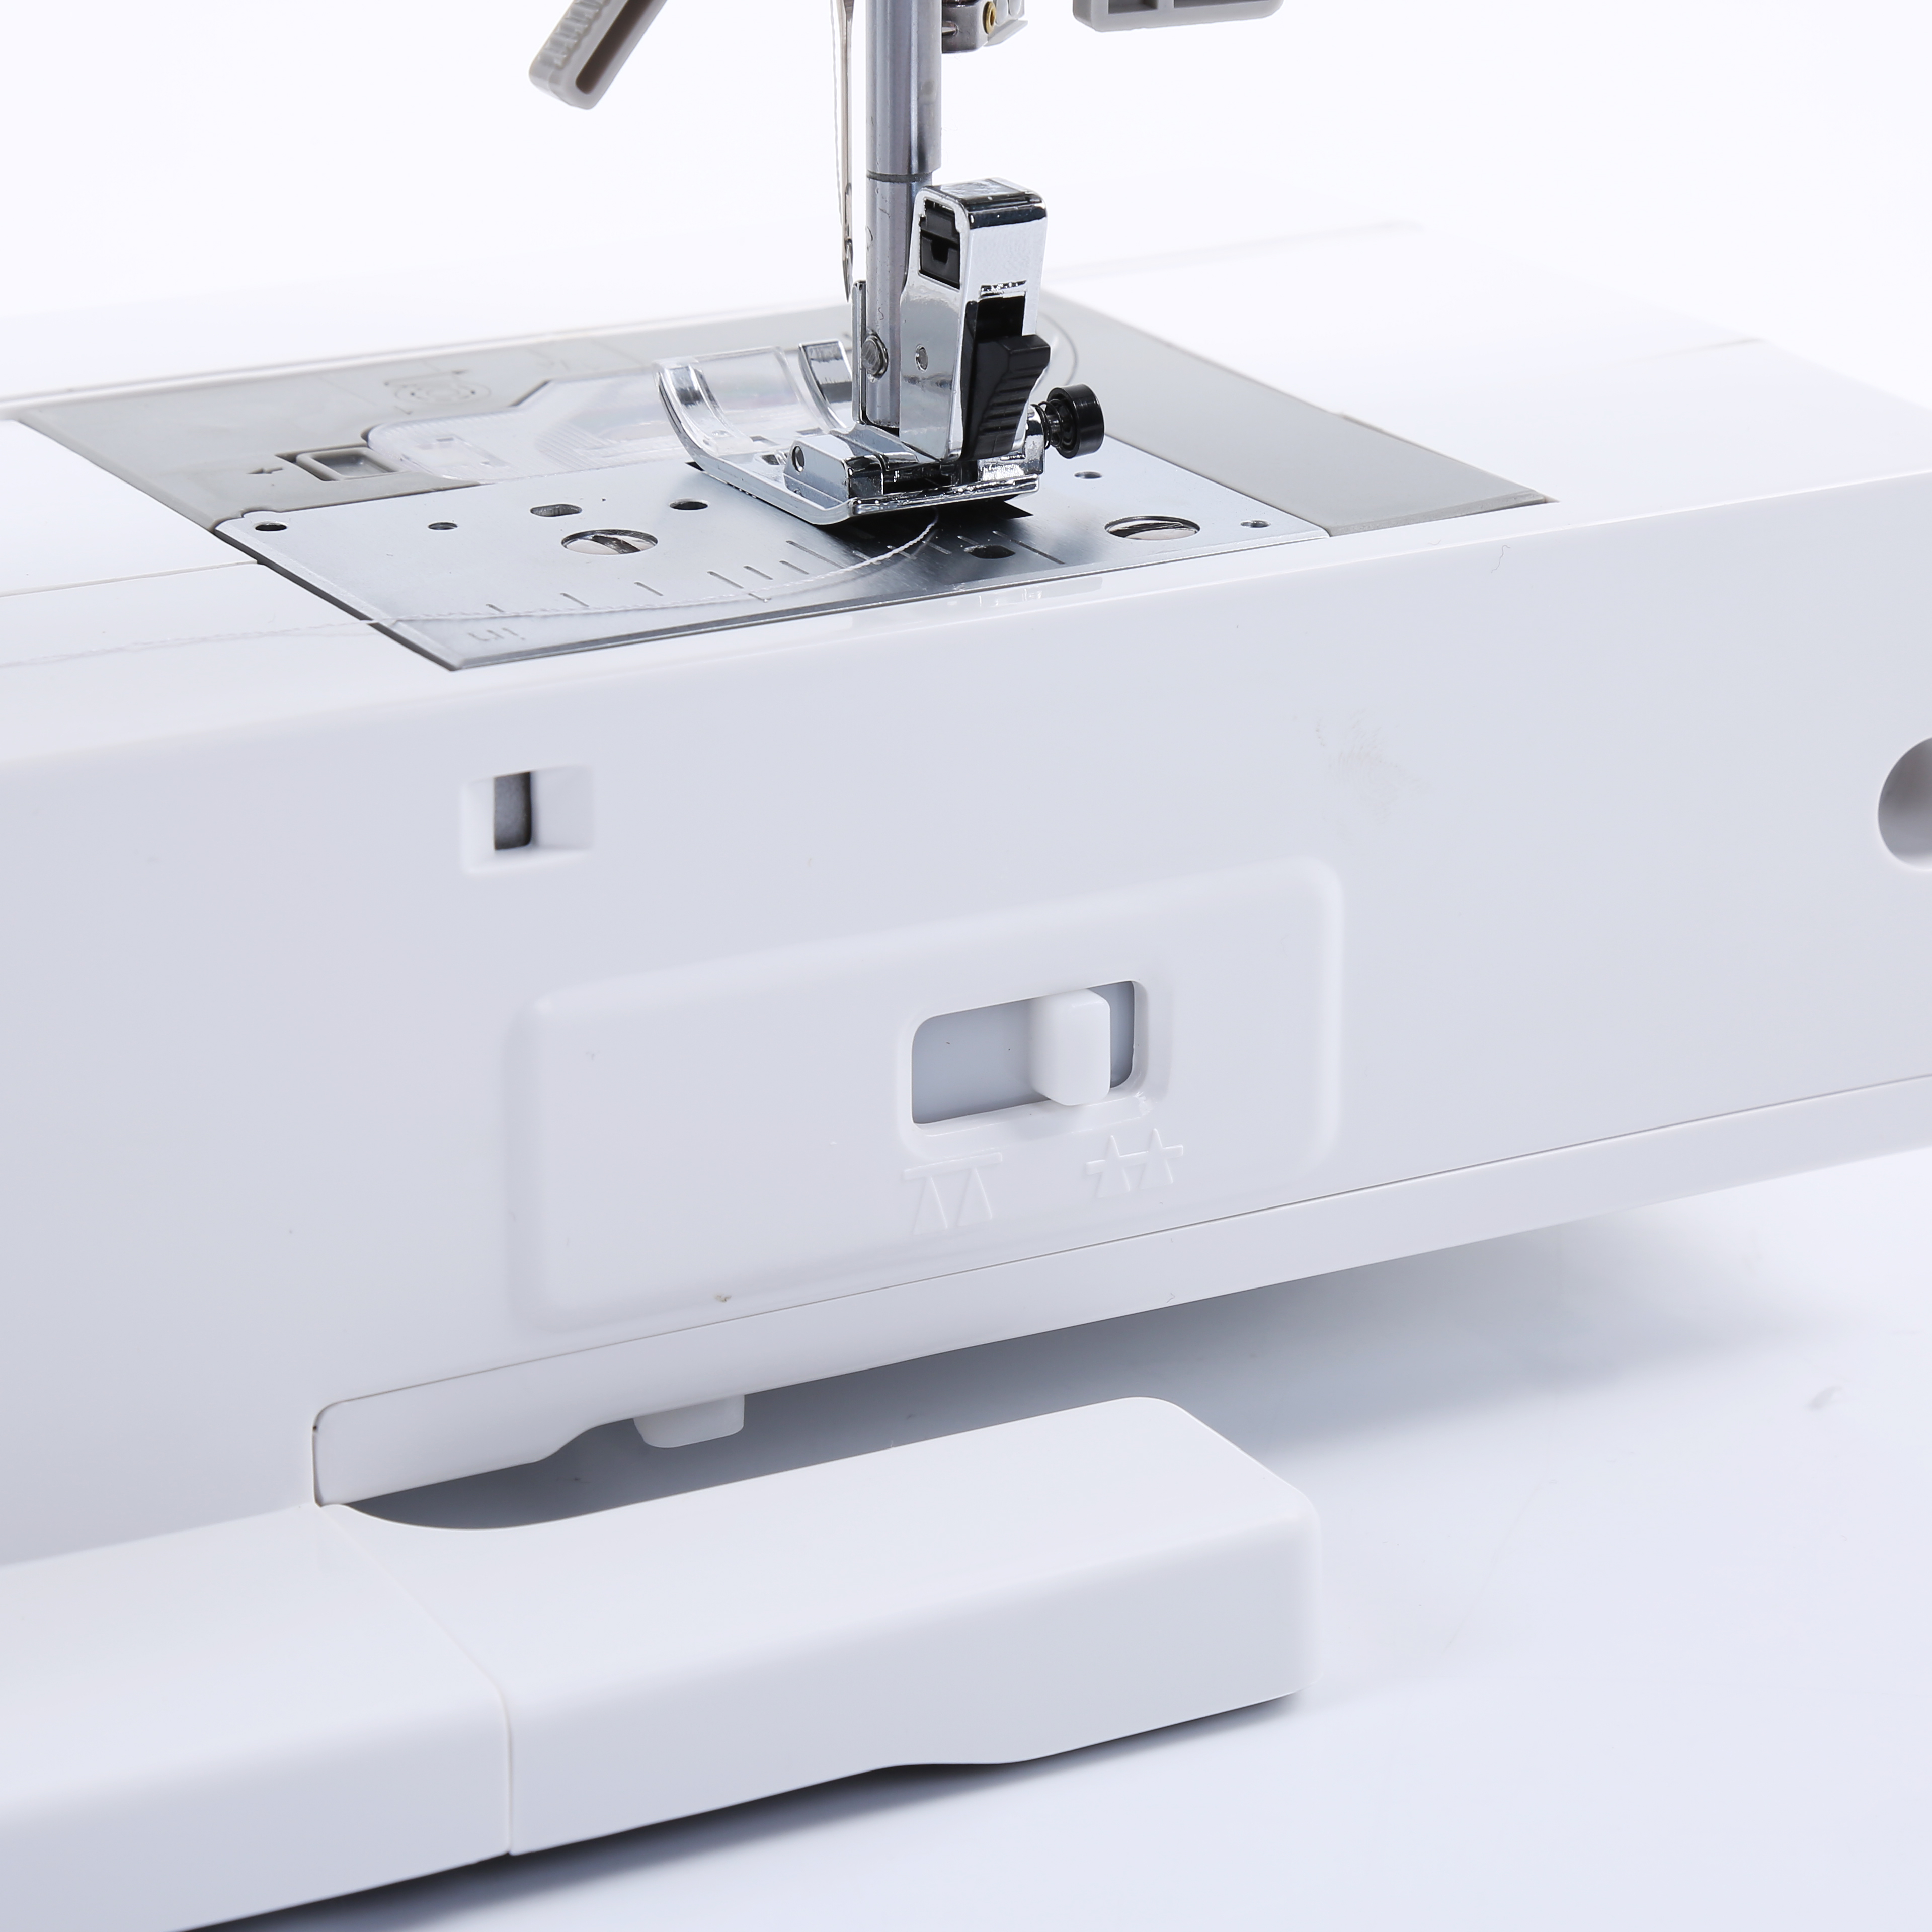 Bai бытовой швейной машины AnySew Multi-Function для автоматического